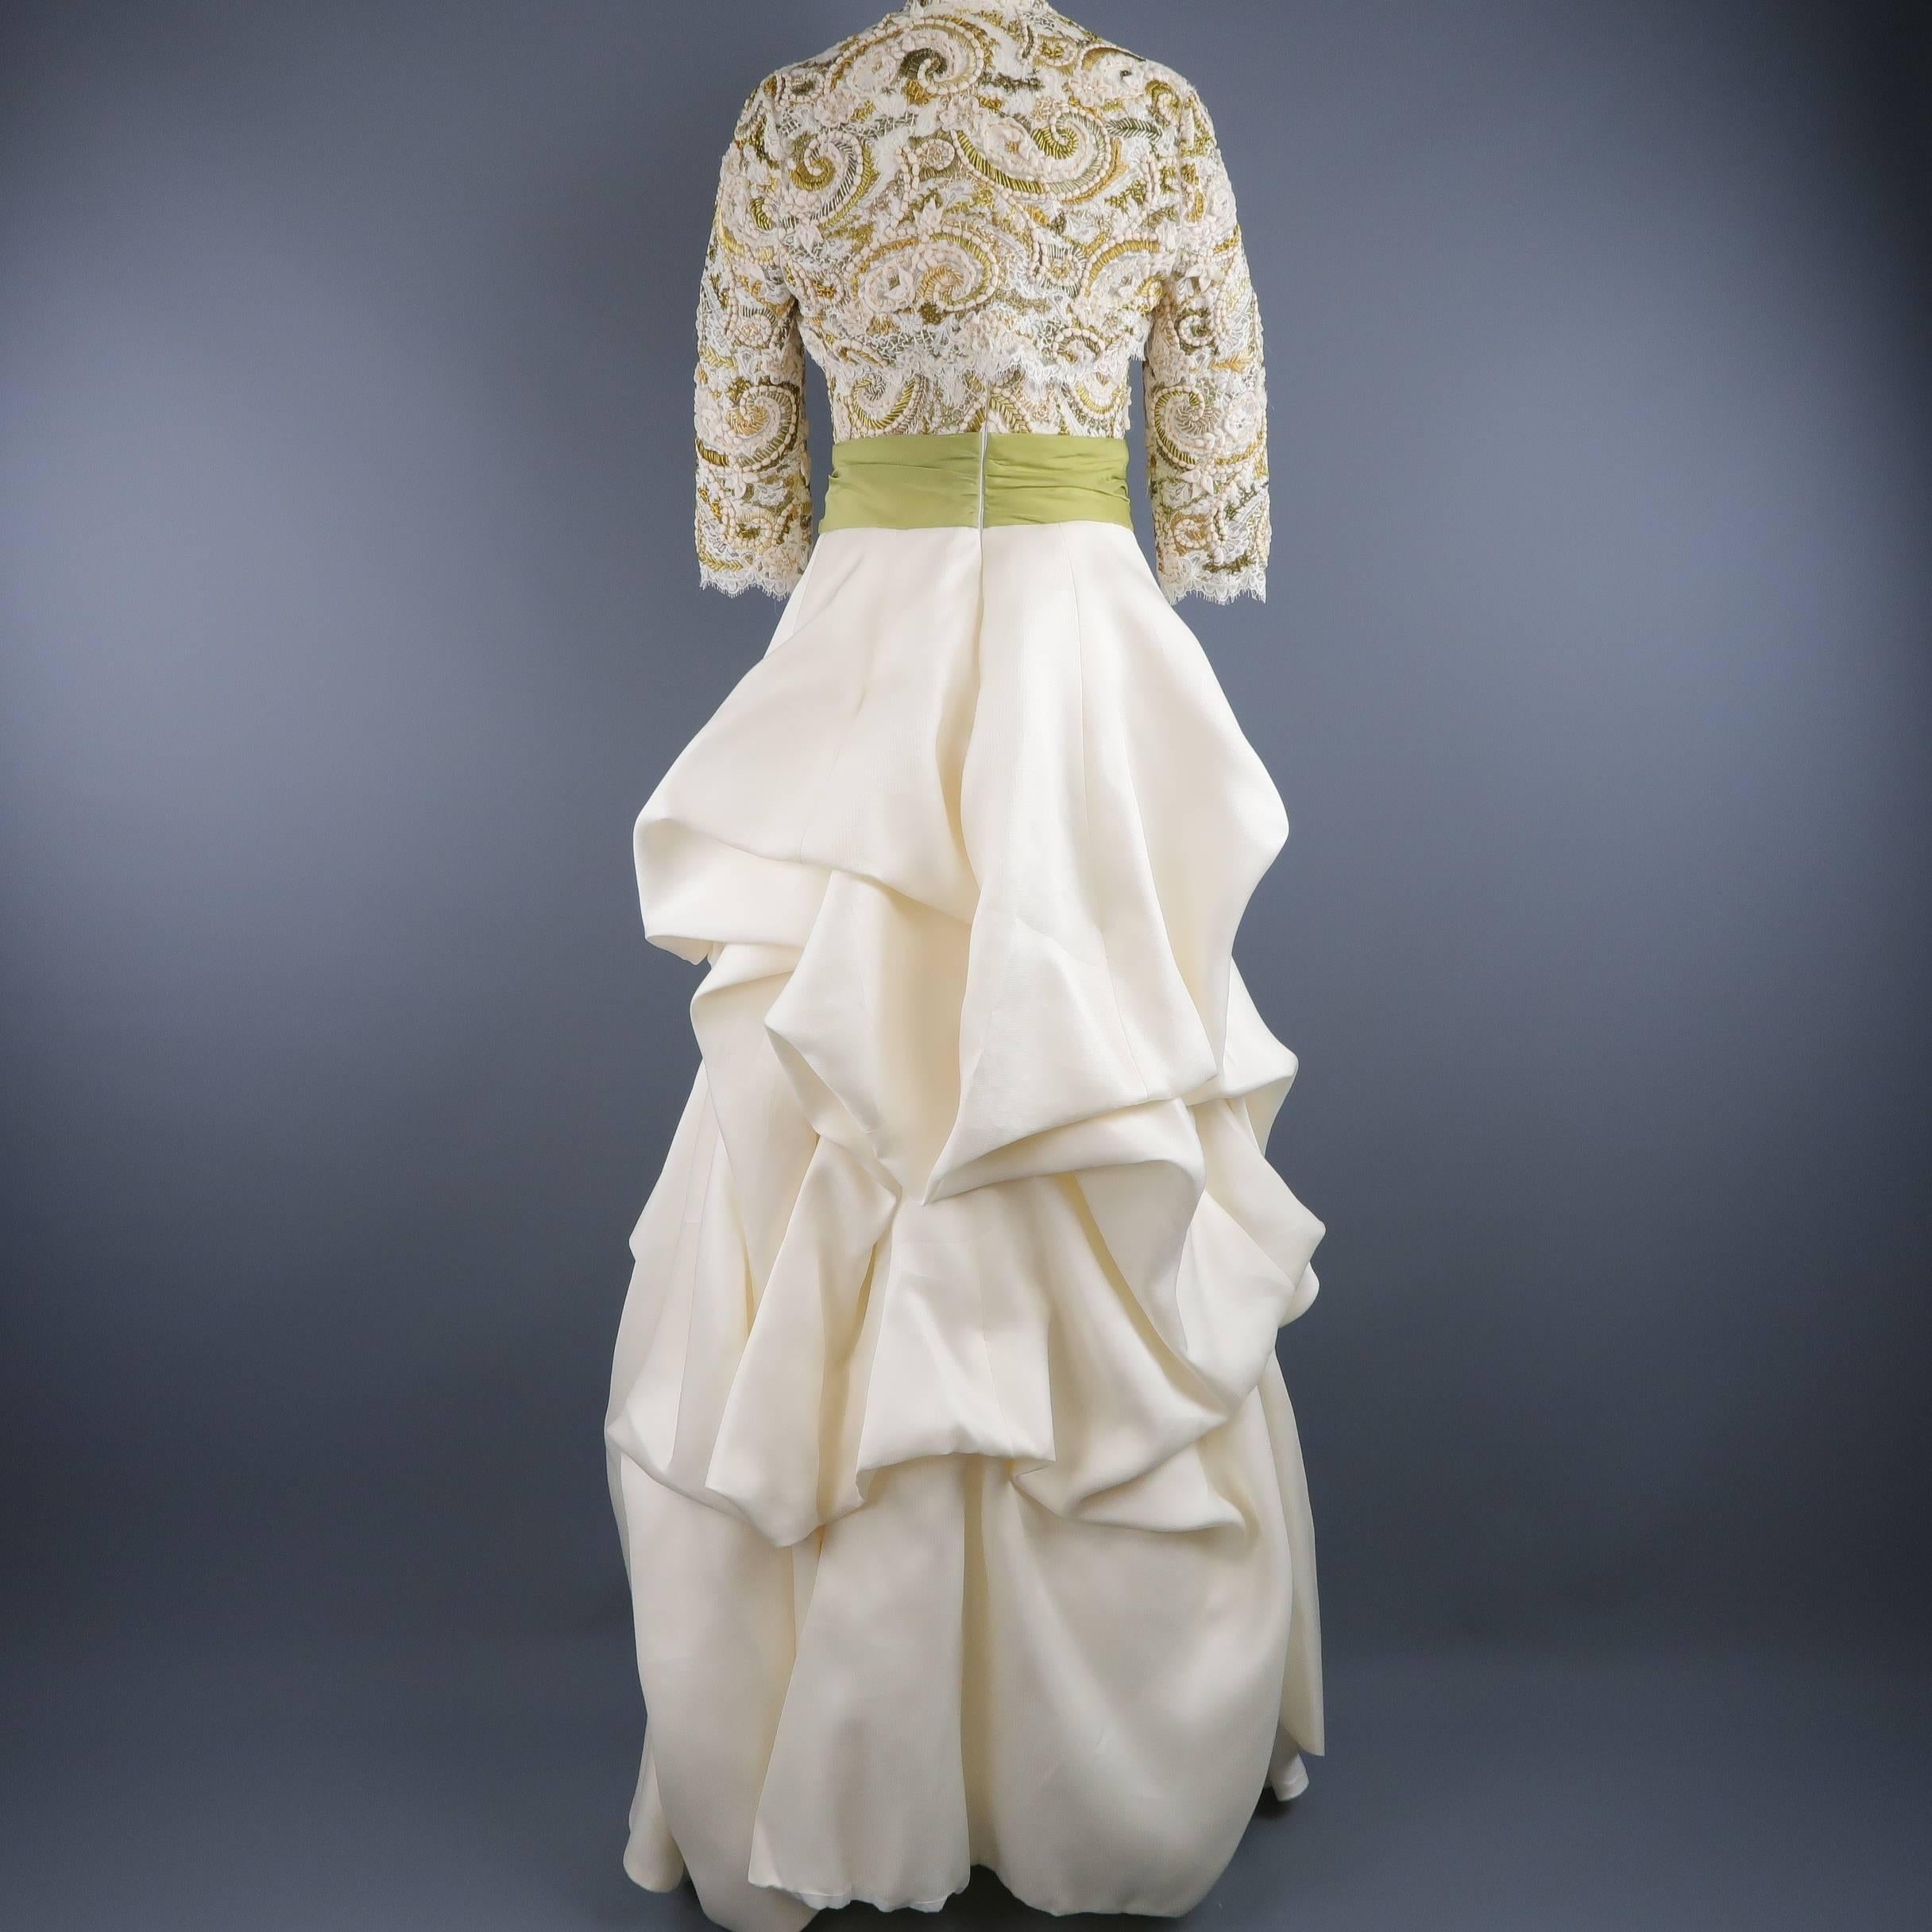 Monique Lhuillier Gown Dress Cream Gold Green Lace Bodice Bolero 1